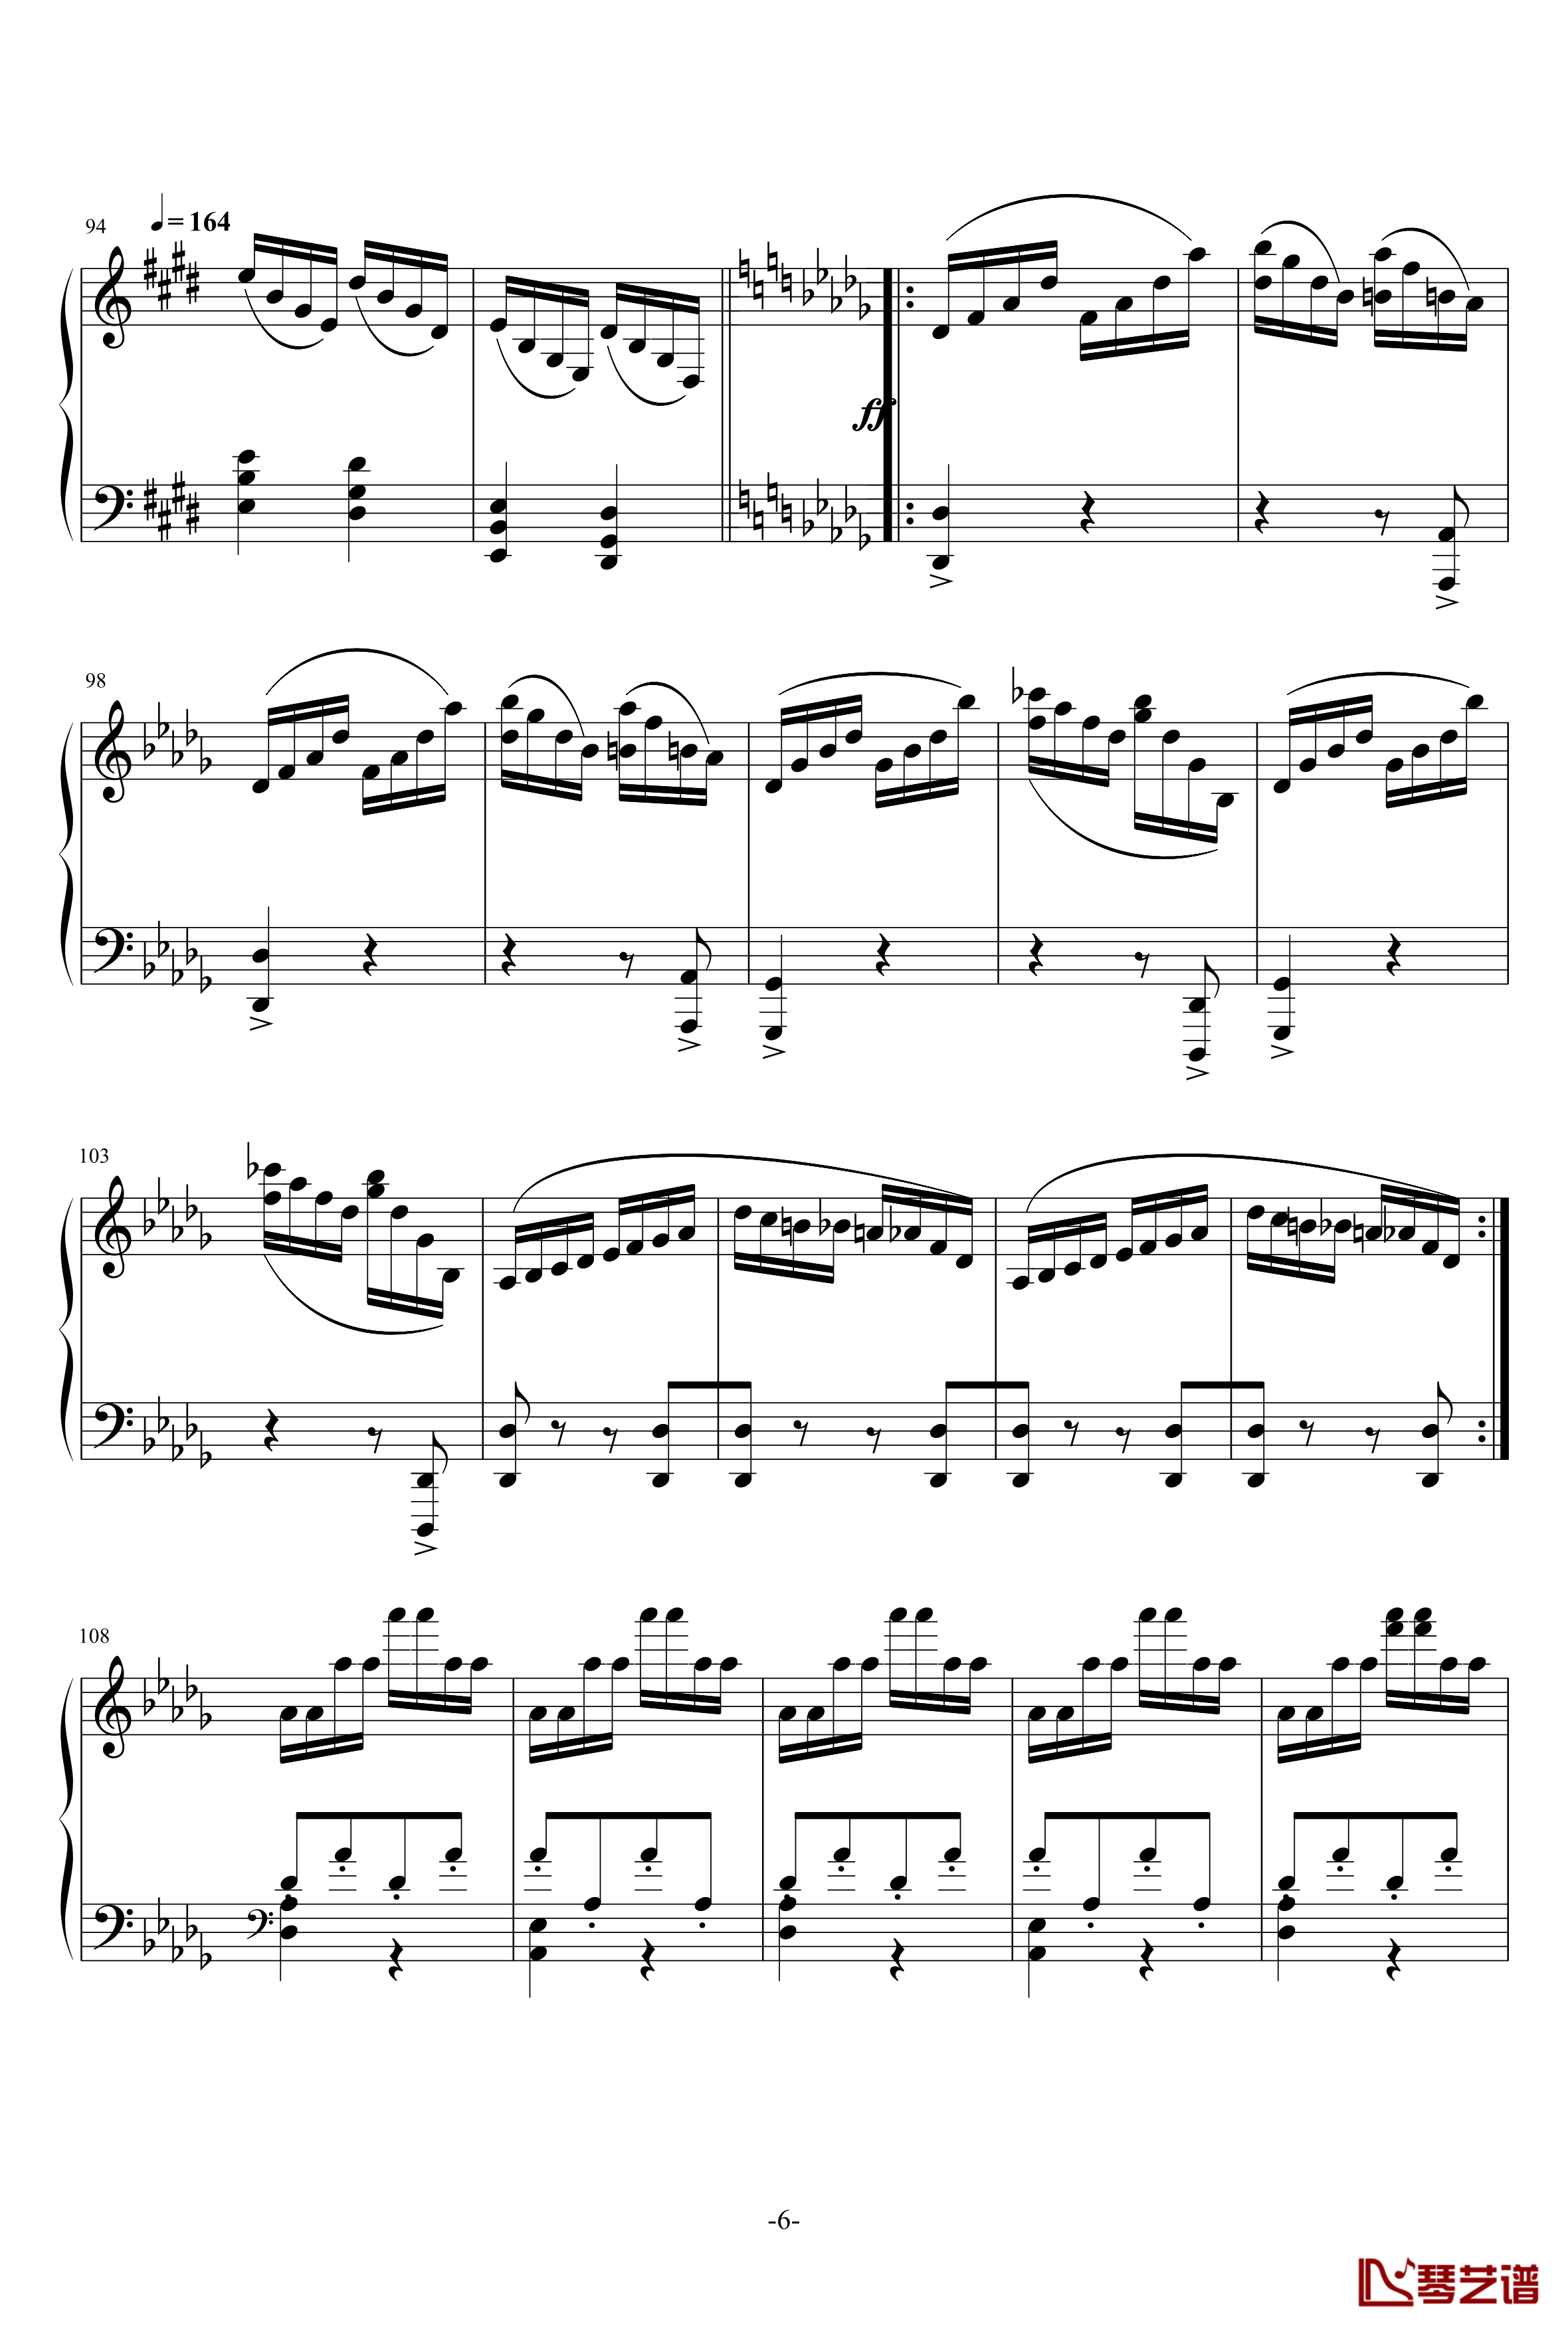 小温狂想曲 3钢琴谱—具有匈牙利狂想曲风格的一曲。—我的代表作-一个球6